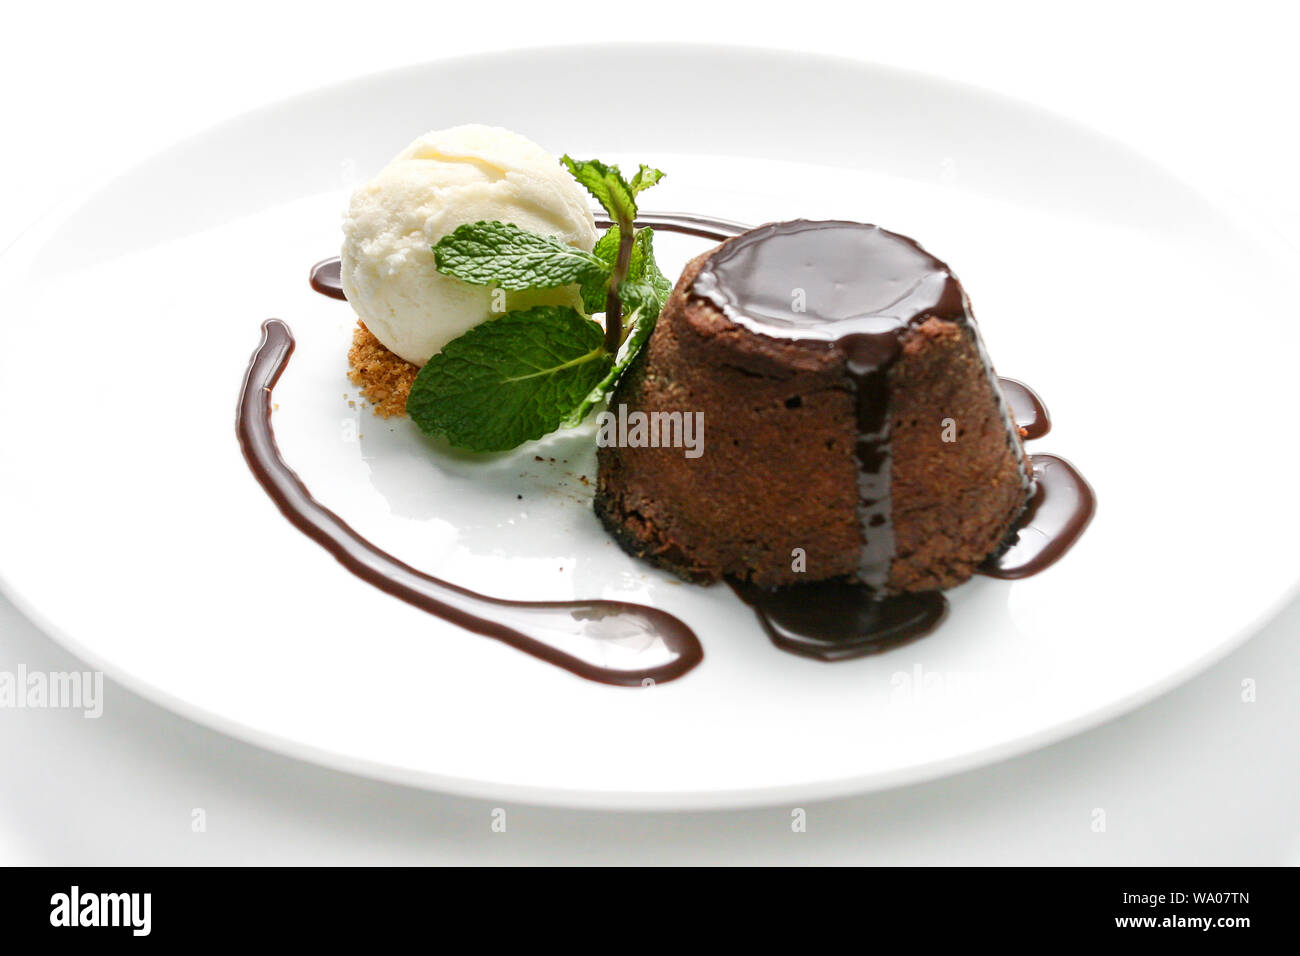 Delizioso 'petit gateau' torta al cioccolato con sciroppo di cacao, gelato alla vaniglia e foglia di menta servito sulla piastra bianca con sfondo bianco. Foto Stock